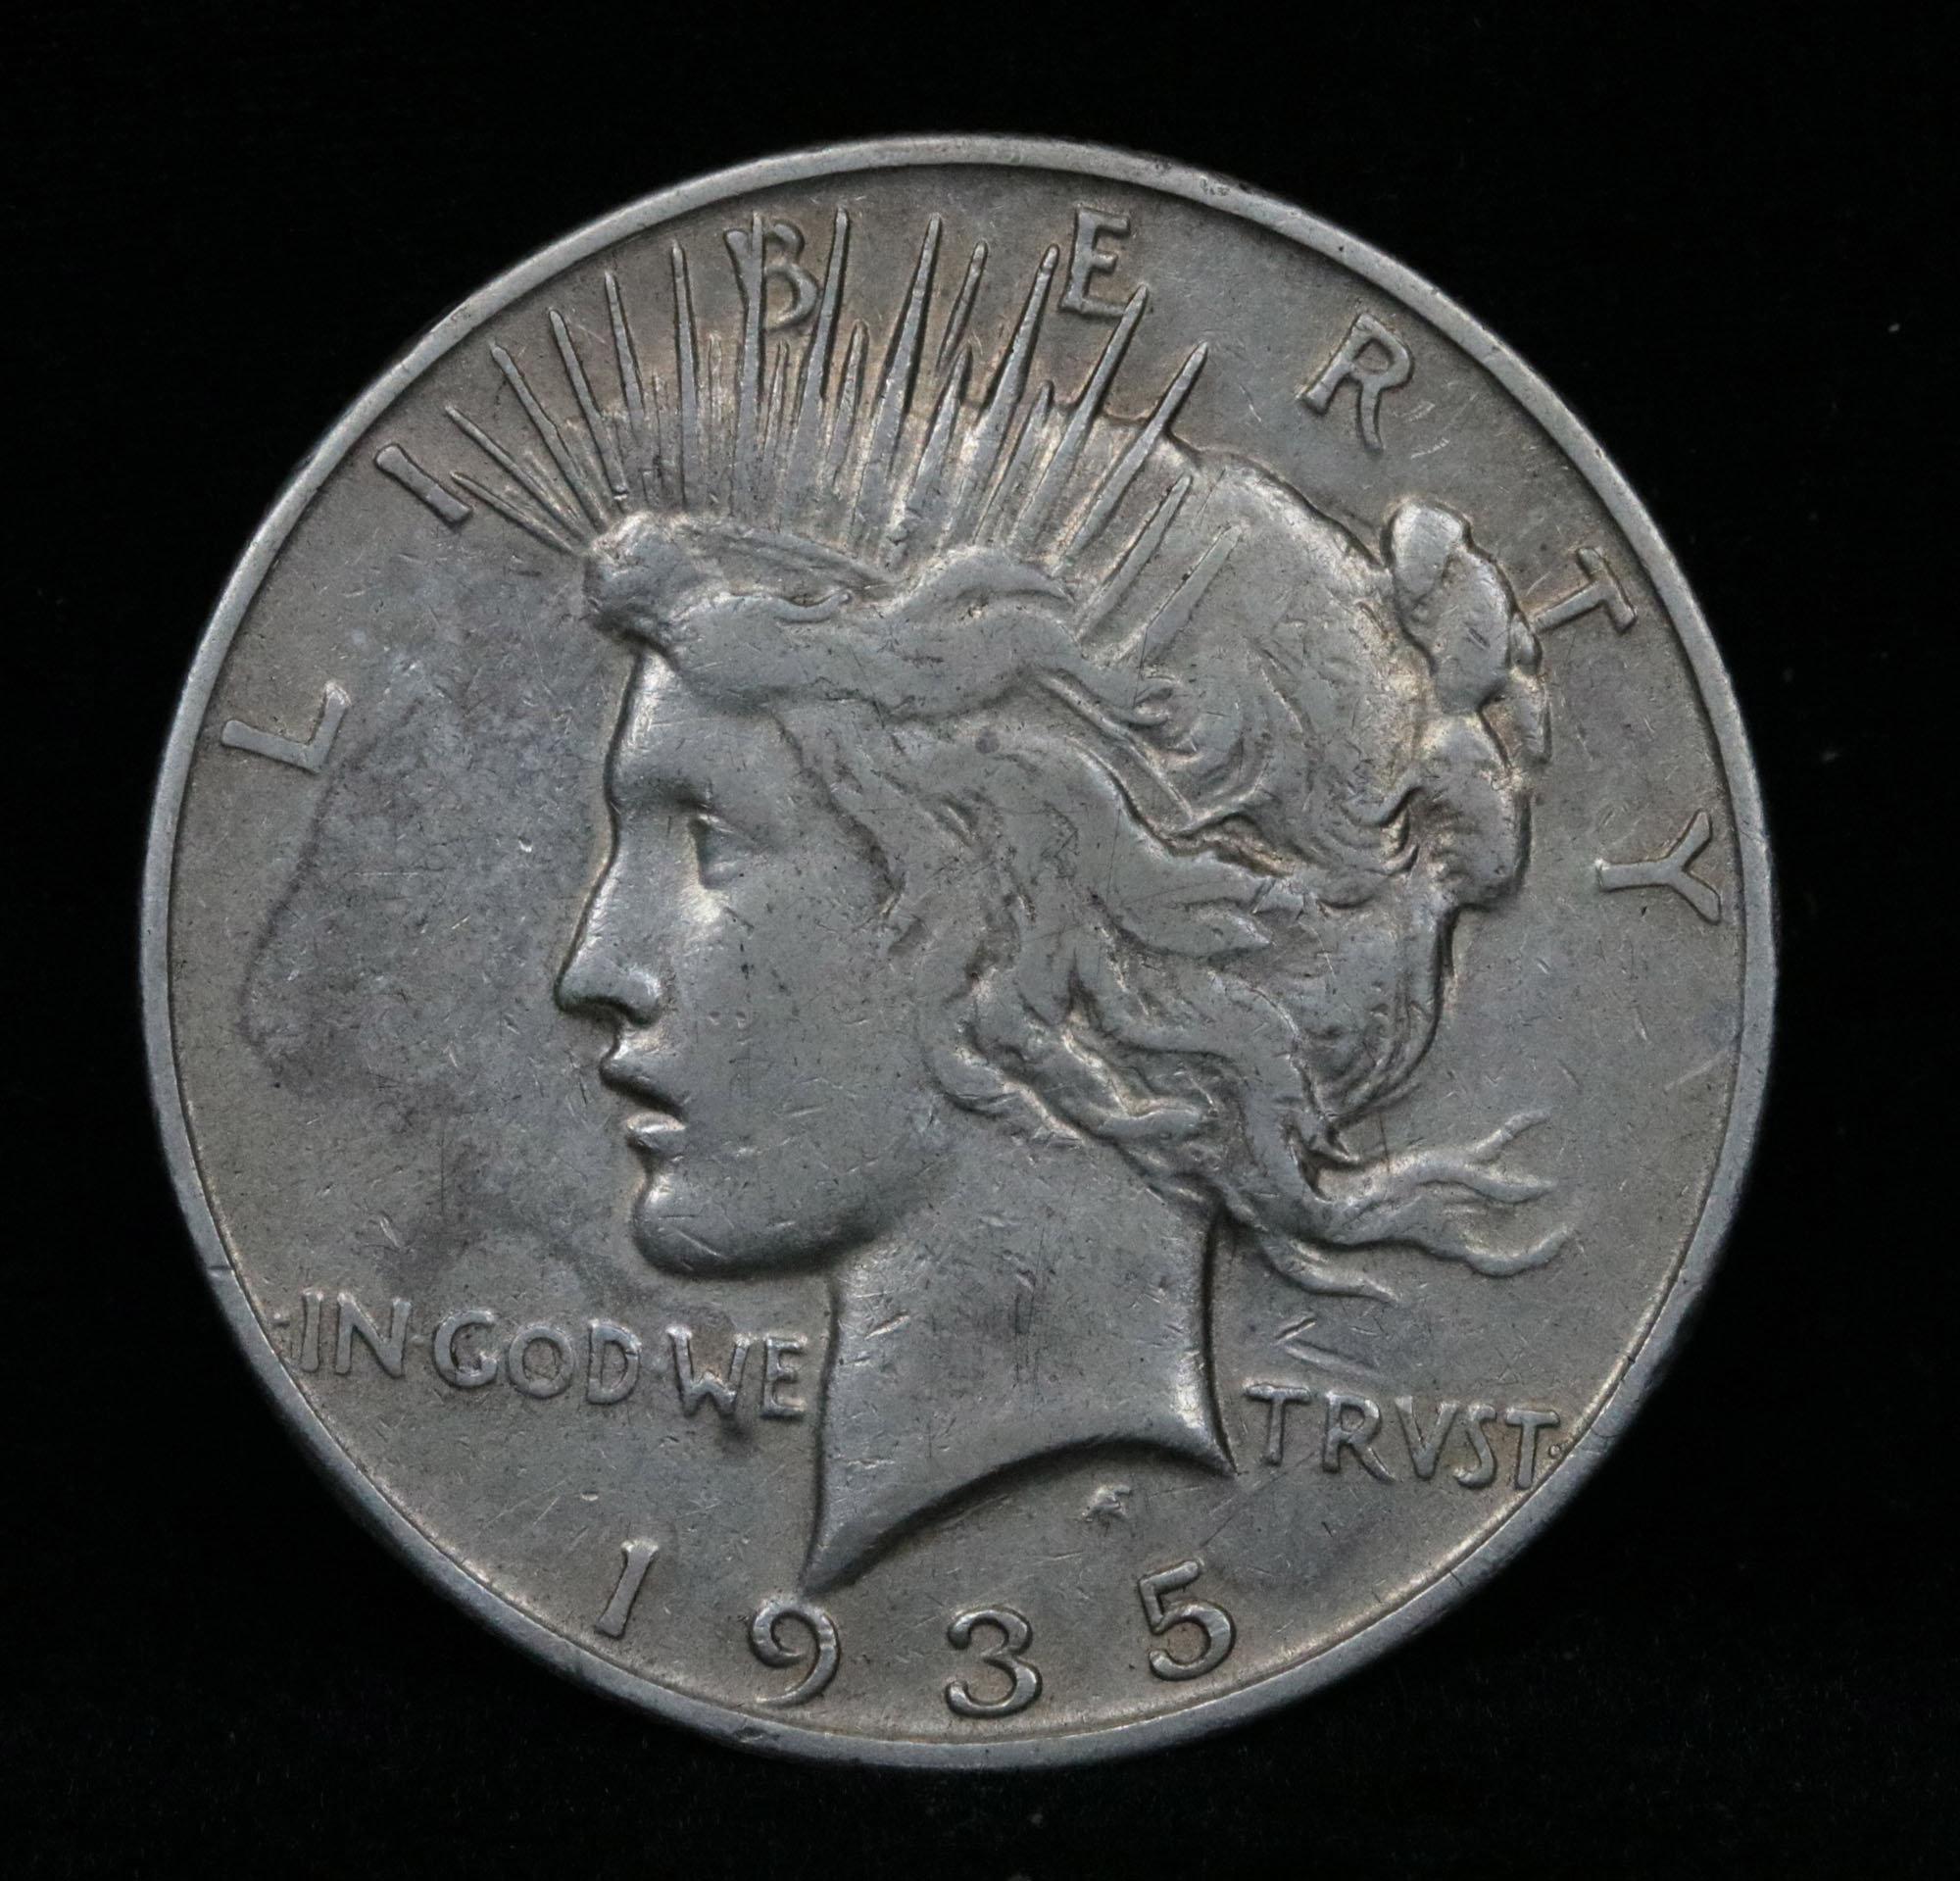 1935-s Peace Dollar $1 Grades vf++